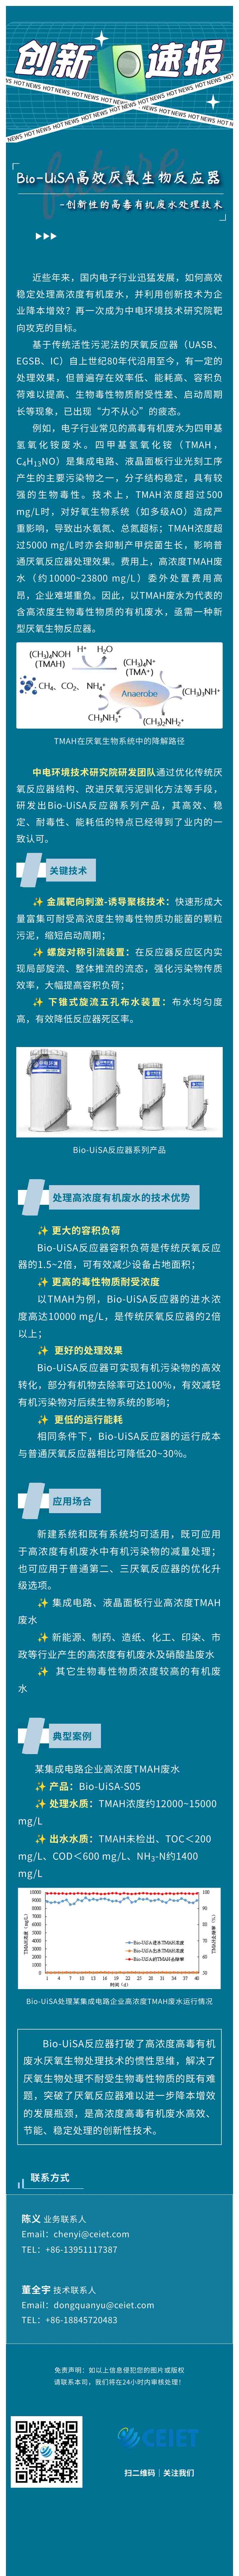 3创新速报   Bio-UiSA高效厌氧生物反应器.jpg